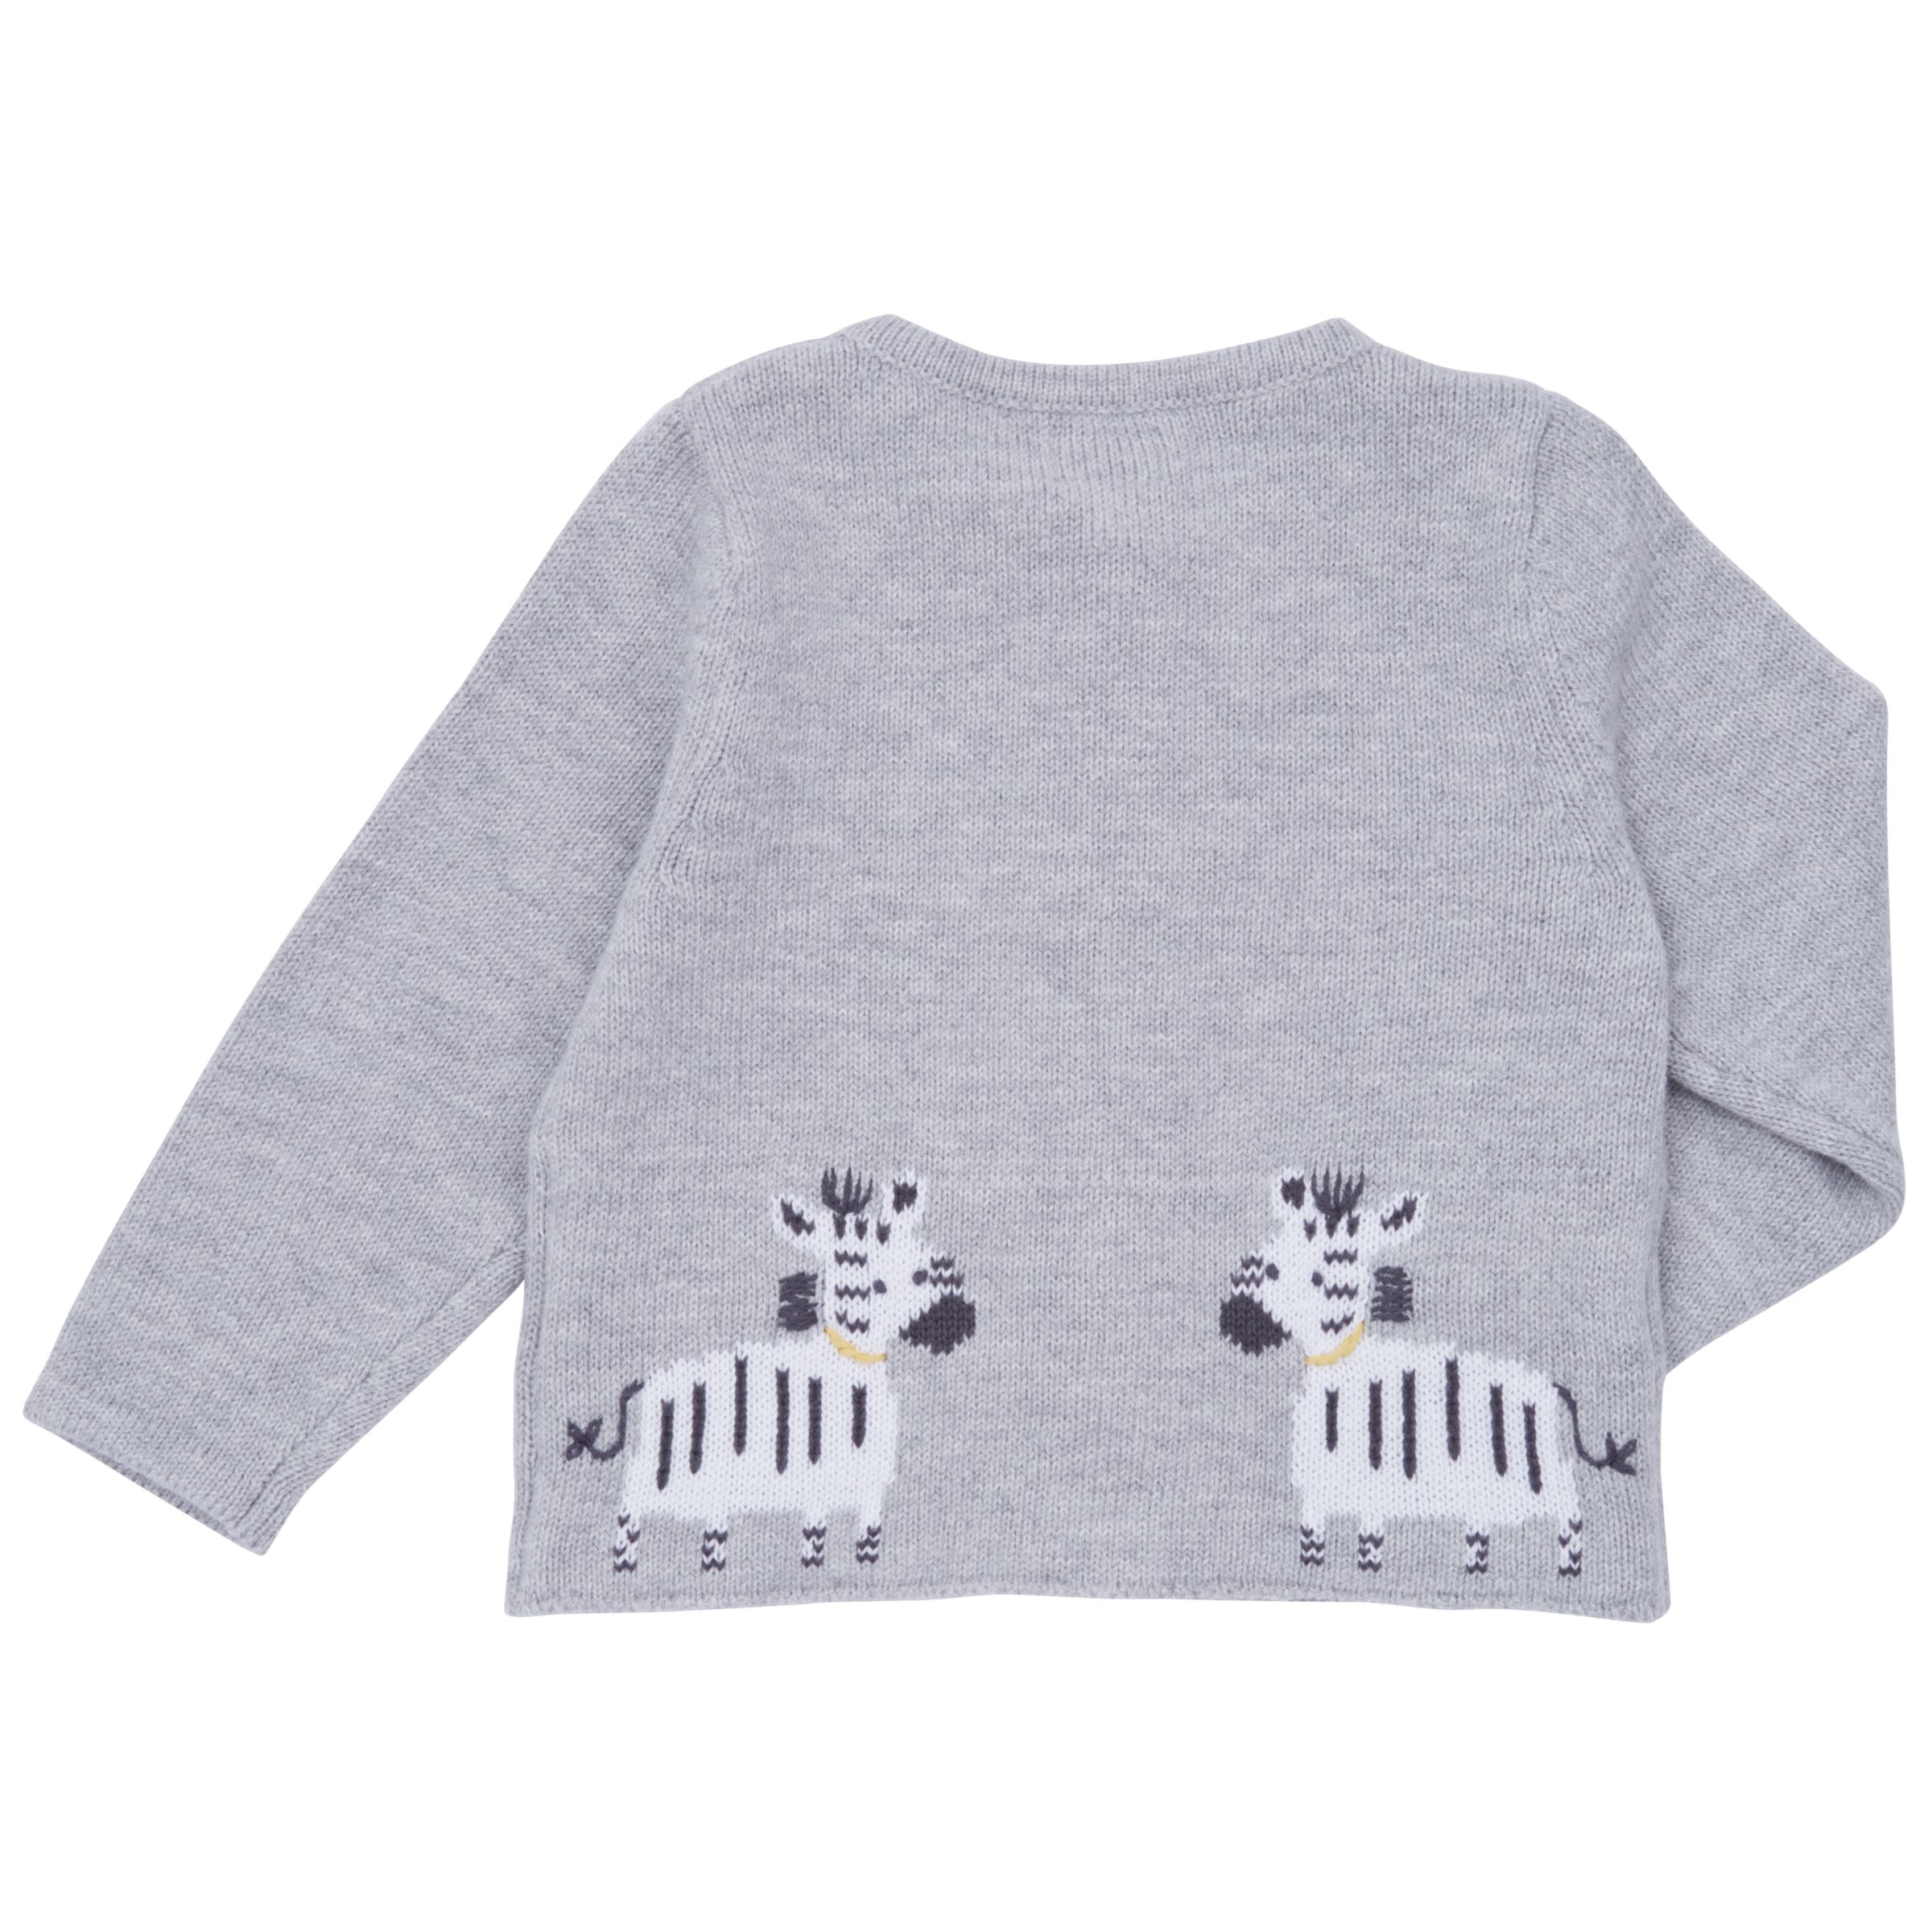 Buy John Lewis Baby Knitted Zebra Cardigan, Grey | John Lewis